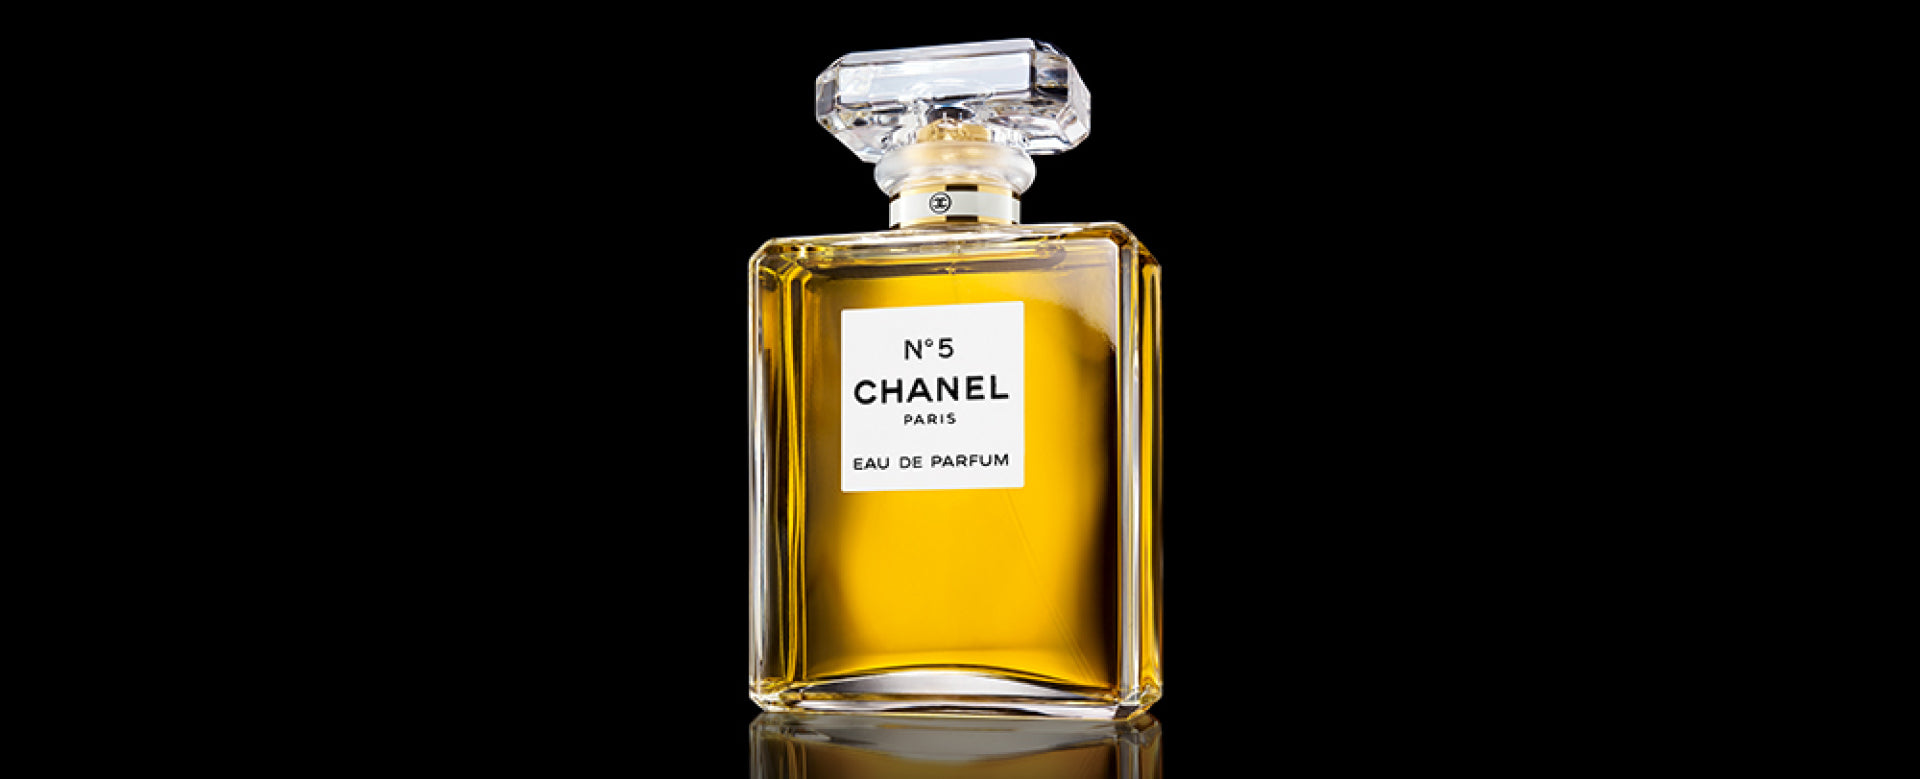 CHANEL (N°22) Les Exclusifs de CHANEL - Eau de Parfum (200ml) | Harrods US